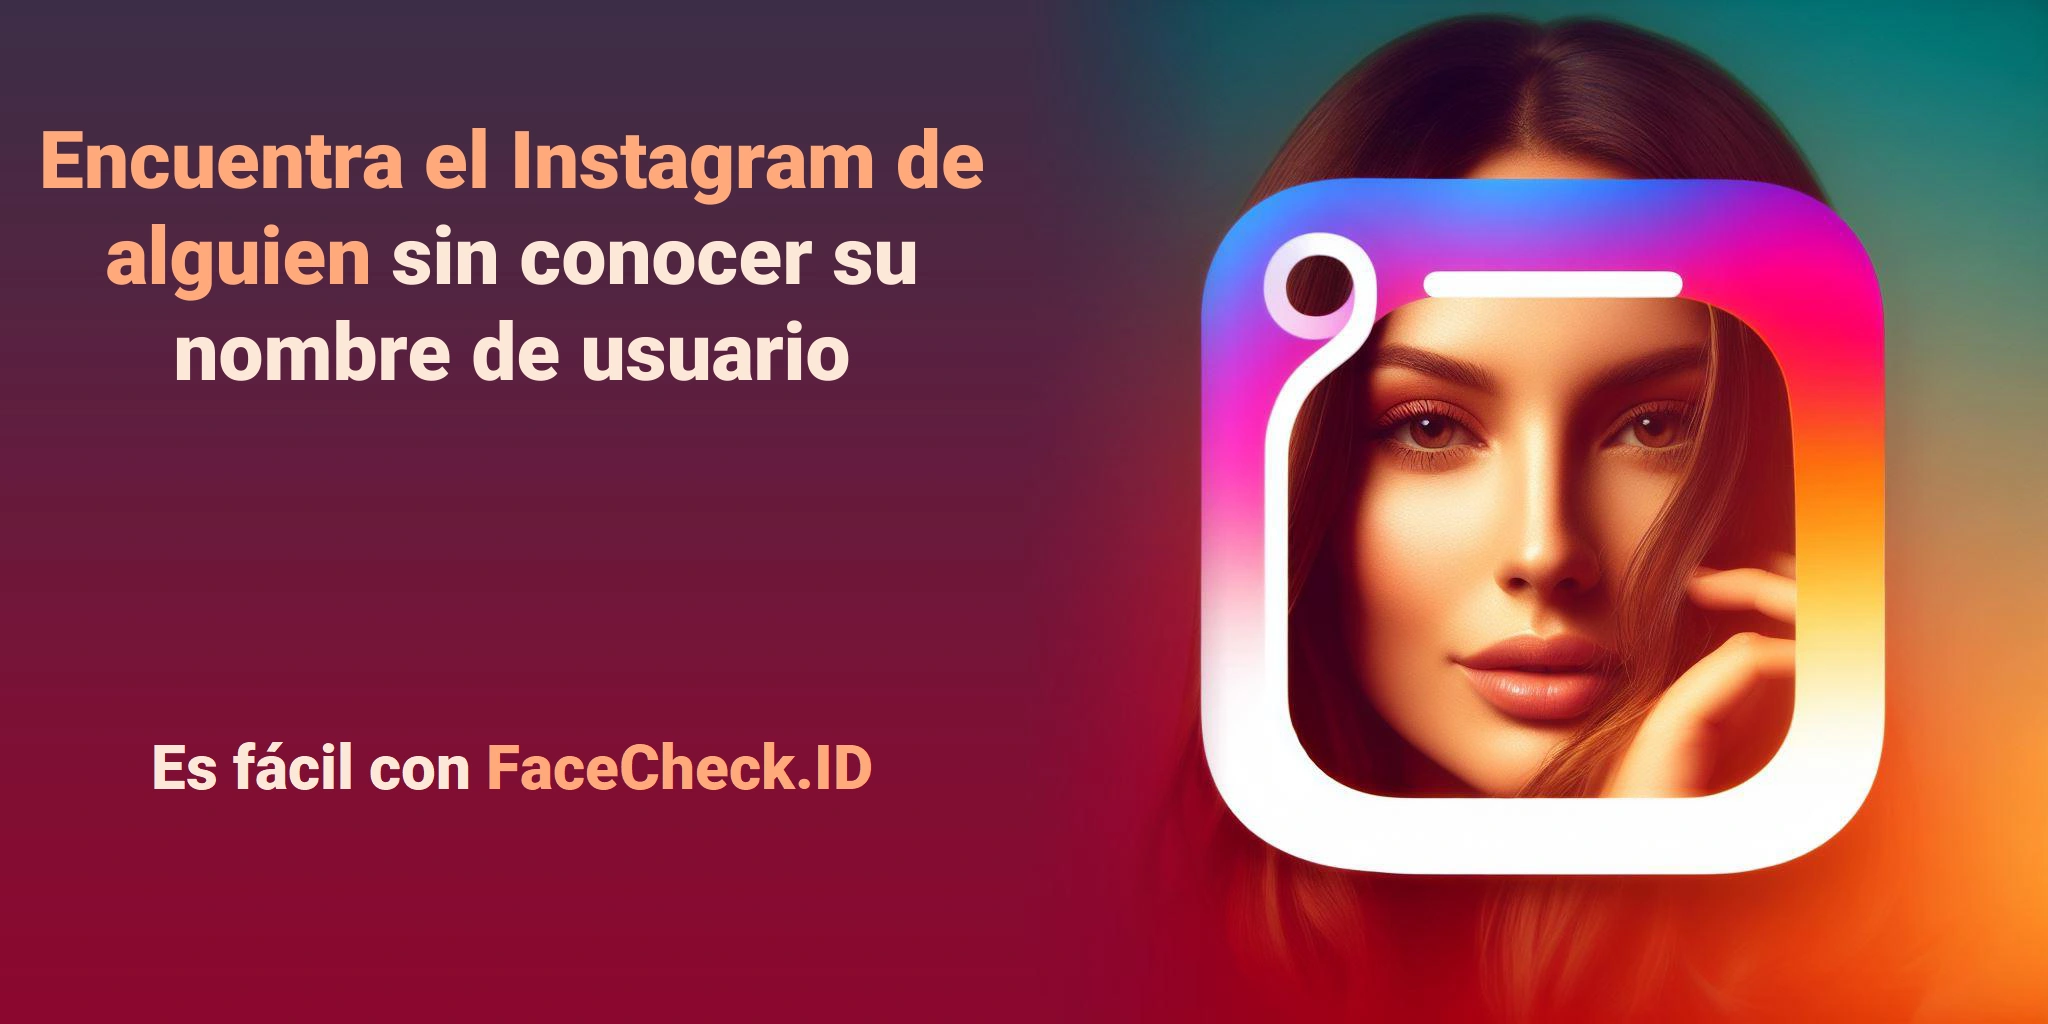 Encuentra el Instagram de alguien sin conocer su nombre de usuario Es fácil con FaceCheck.ID